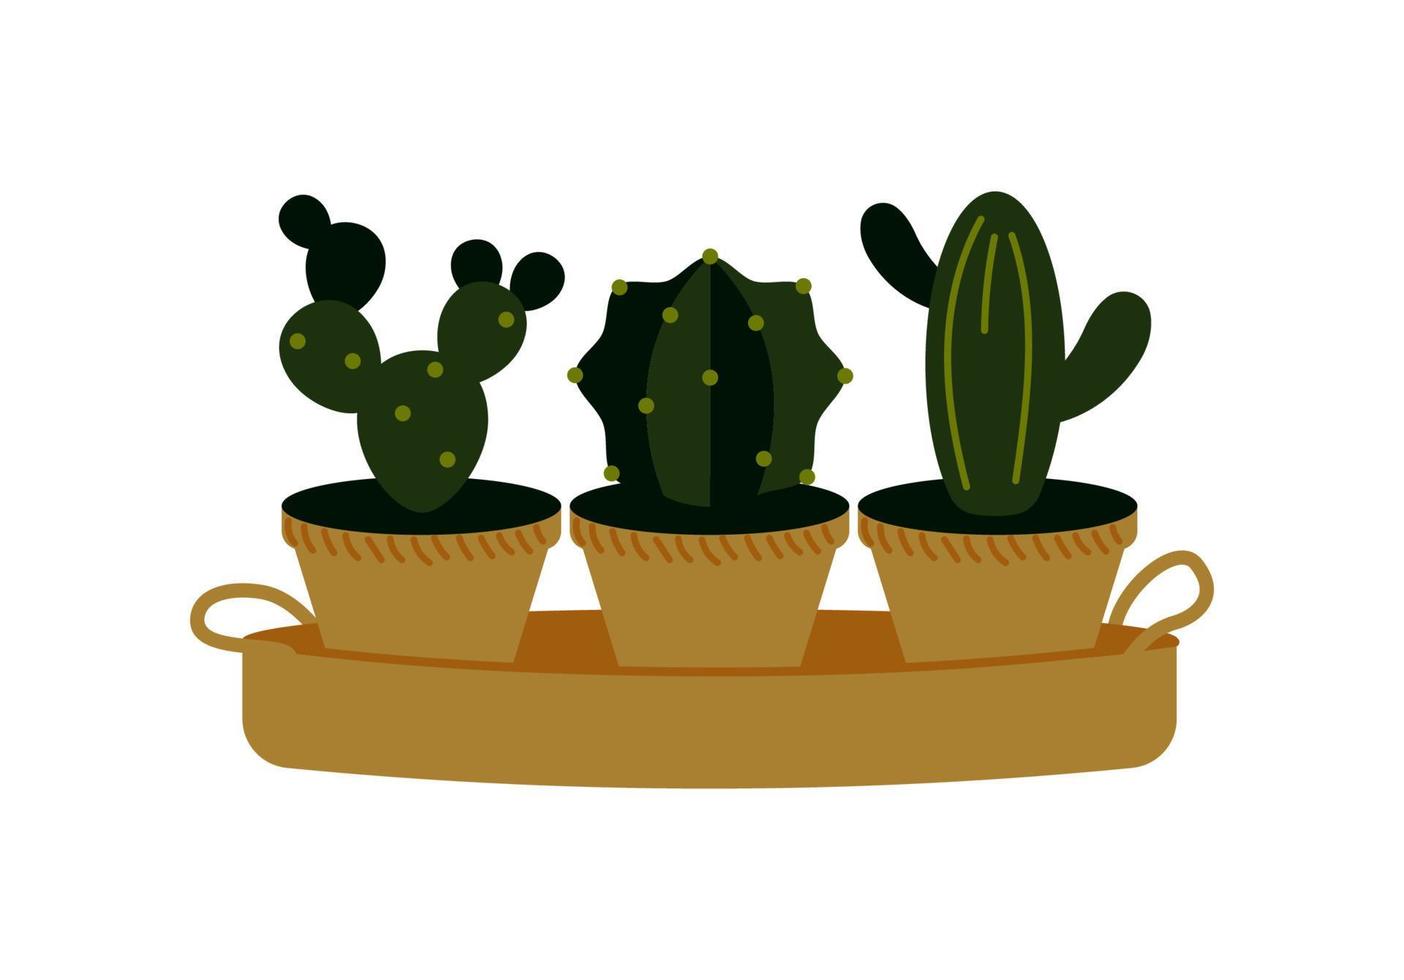 vektor illustration av krukväxter kaktusar isolerade på vitt. hemplanta i en kruka. inredningselement.